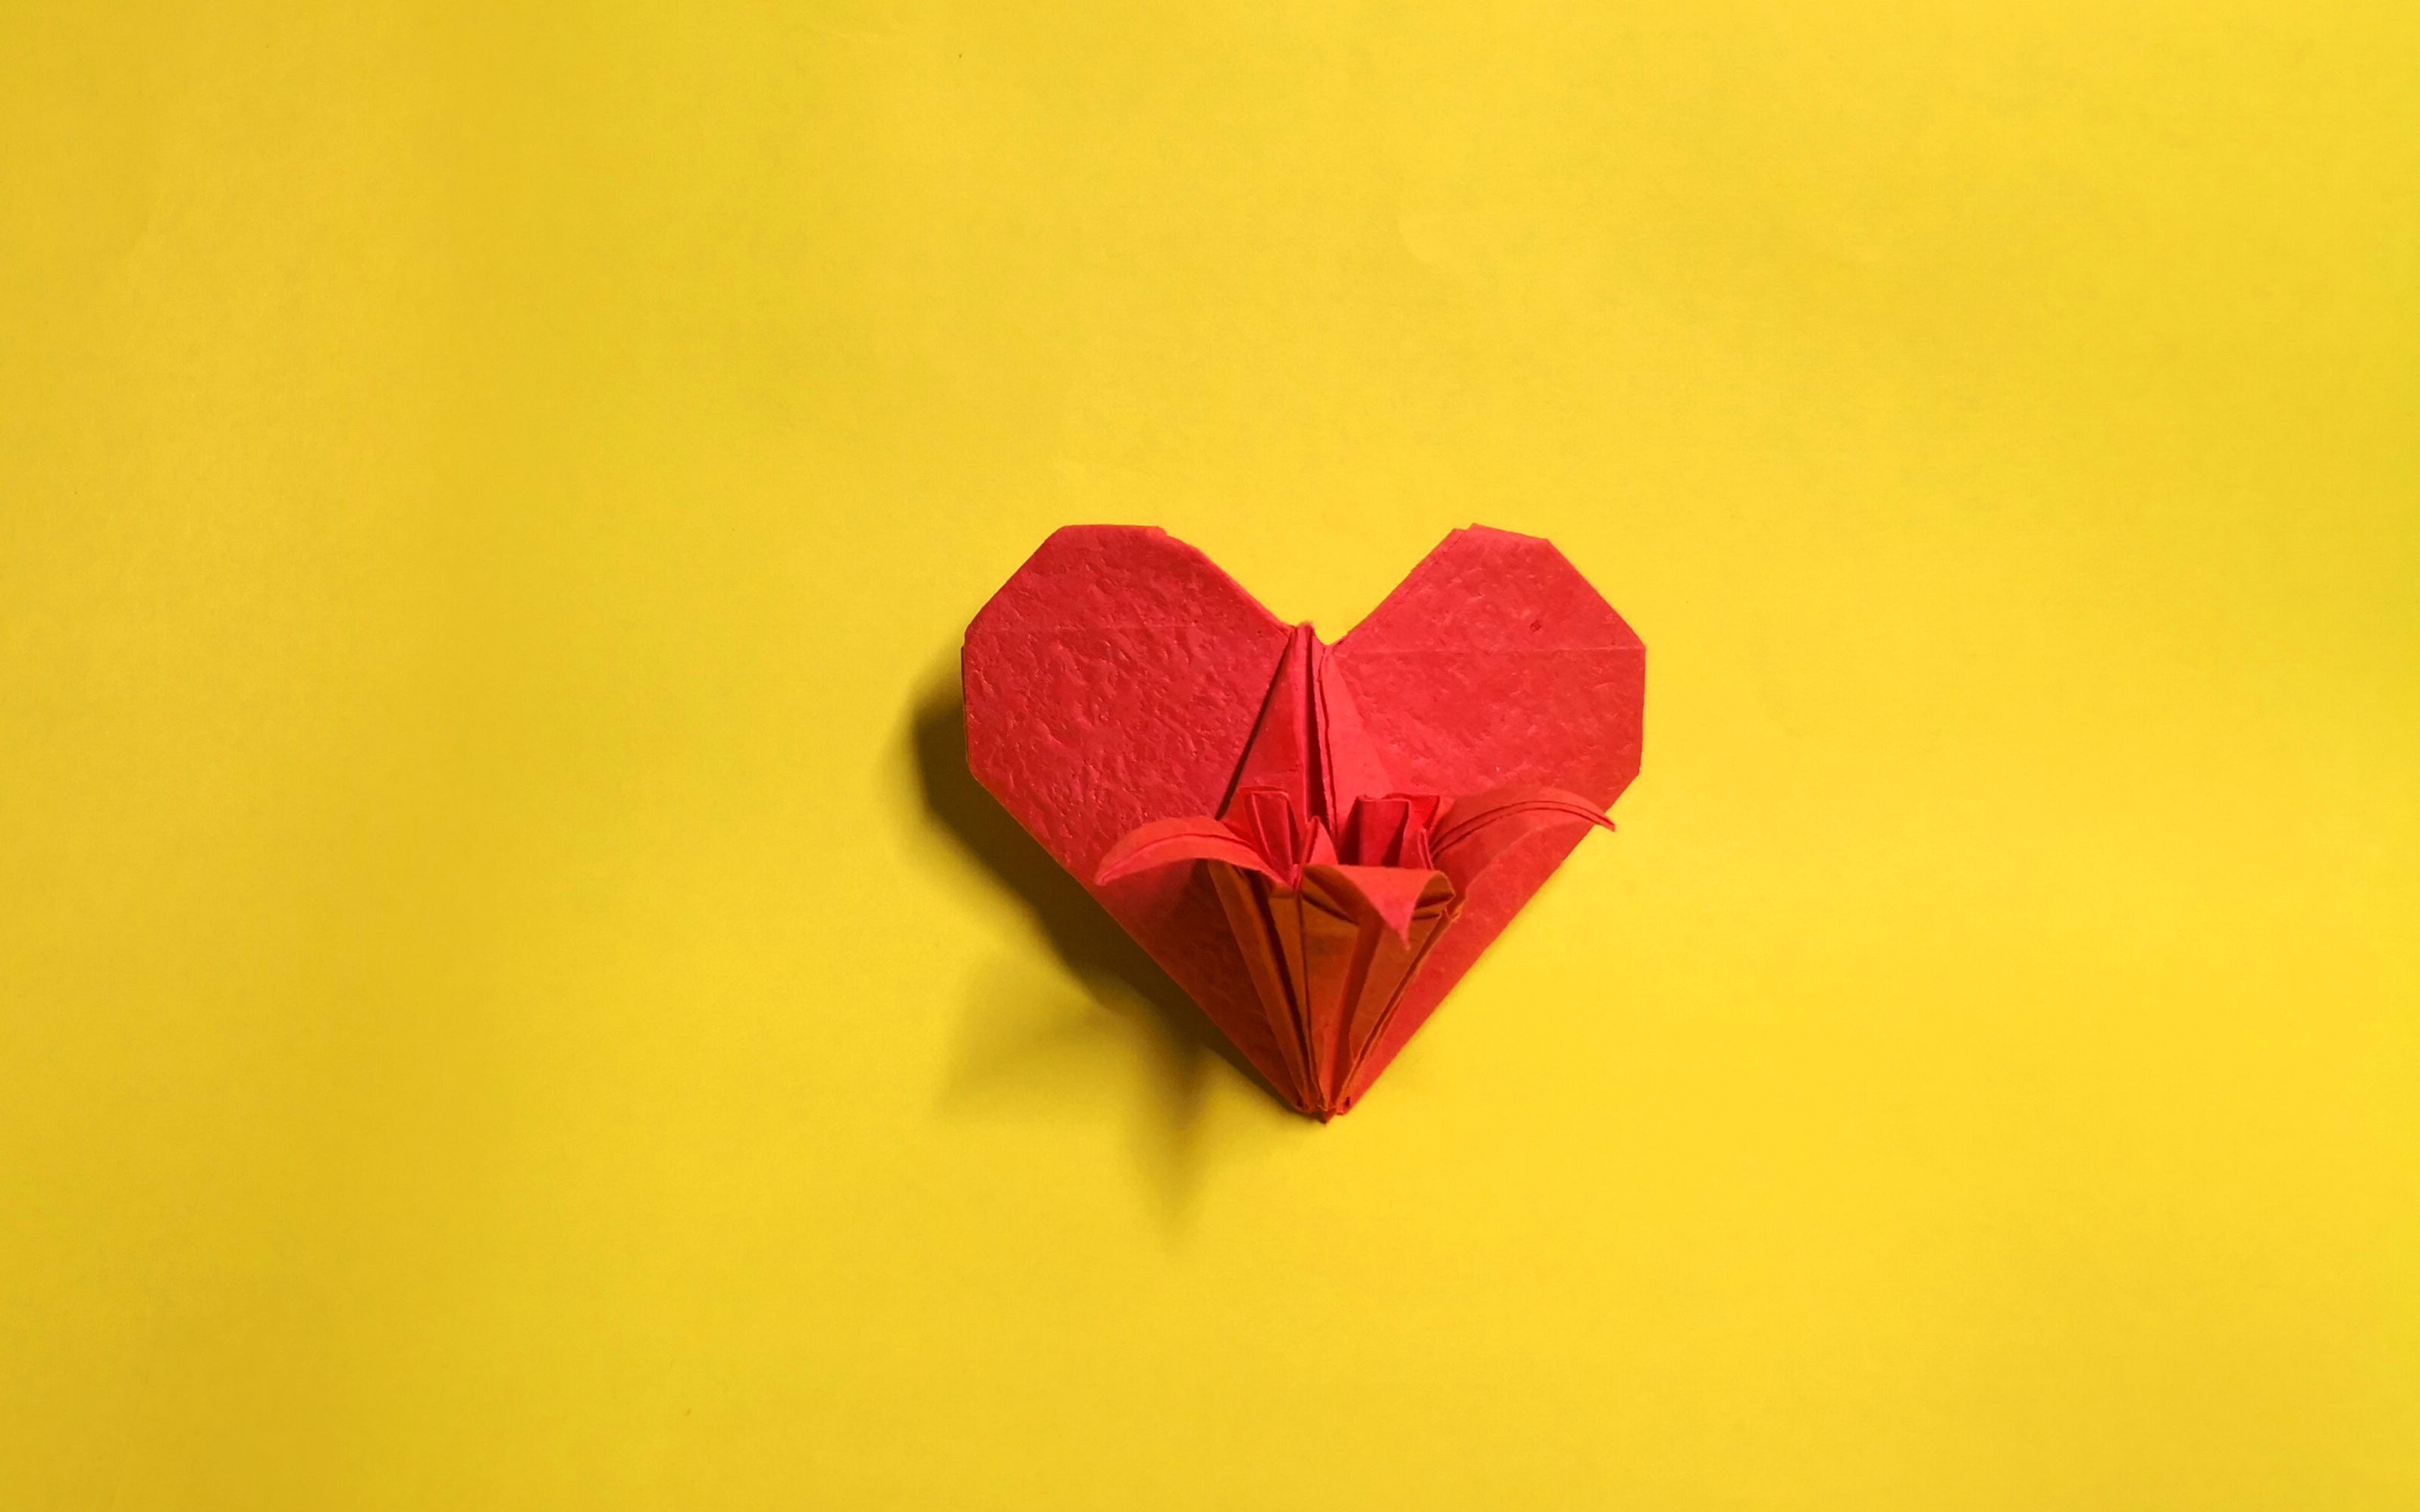 【折纸】心形折纸 一张纸折出立体爱心百合花,花和爱心的结合太漂亮了